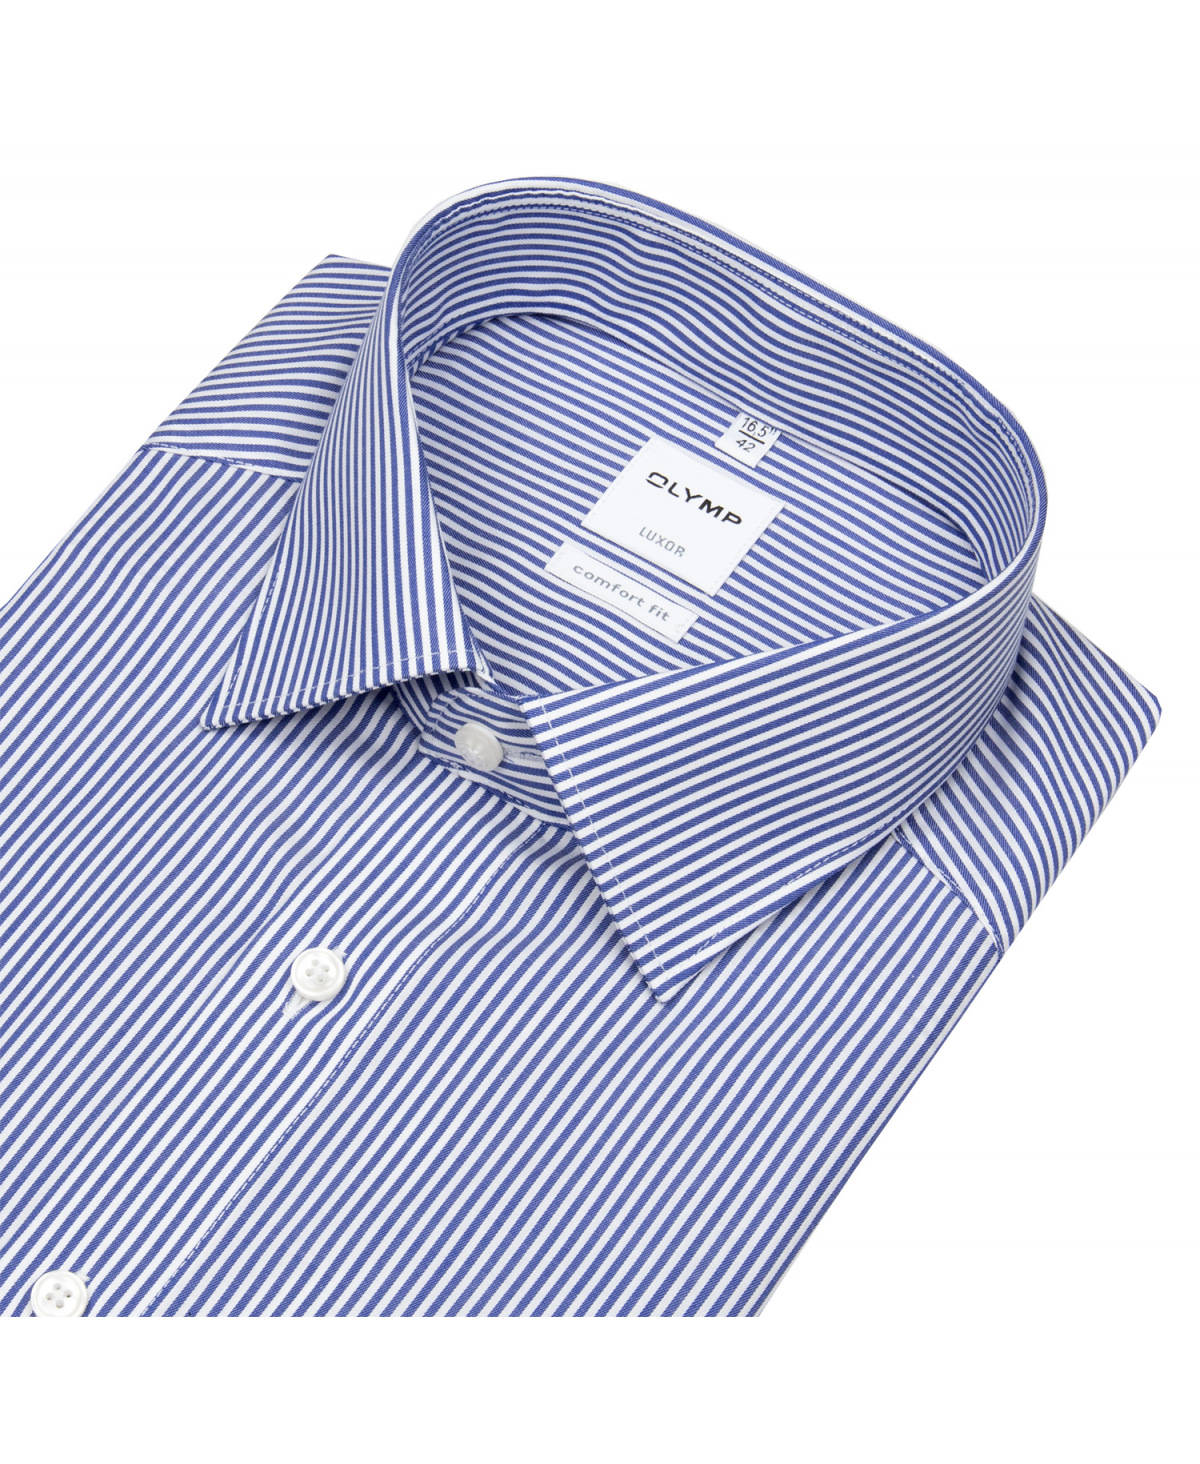 OLYMP Hemd - Streifen Twill blau weiß Luxor Comfort - - Fit / 